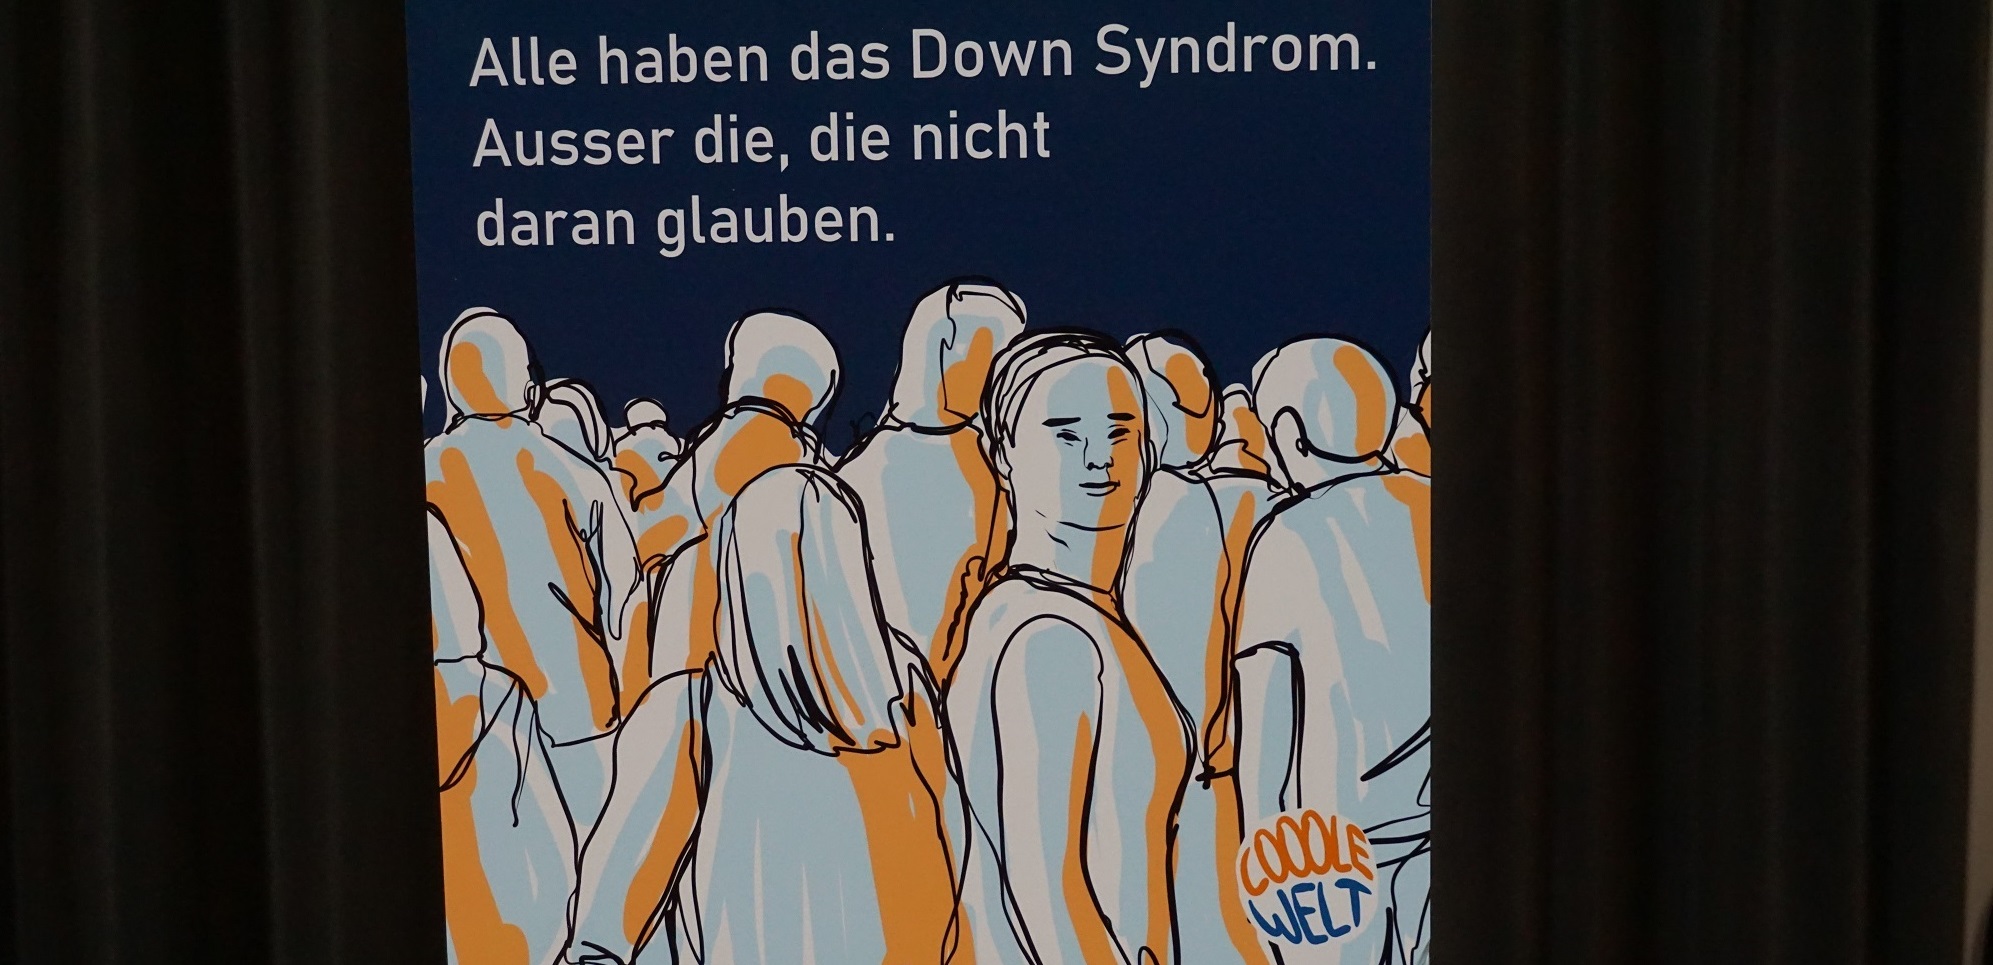 Auf dieser Illustration steht: "Alle haben das Downsyndrom. Ausser die, die nicht daran glauben."